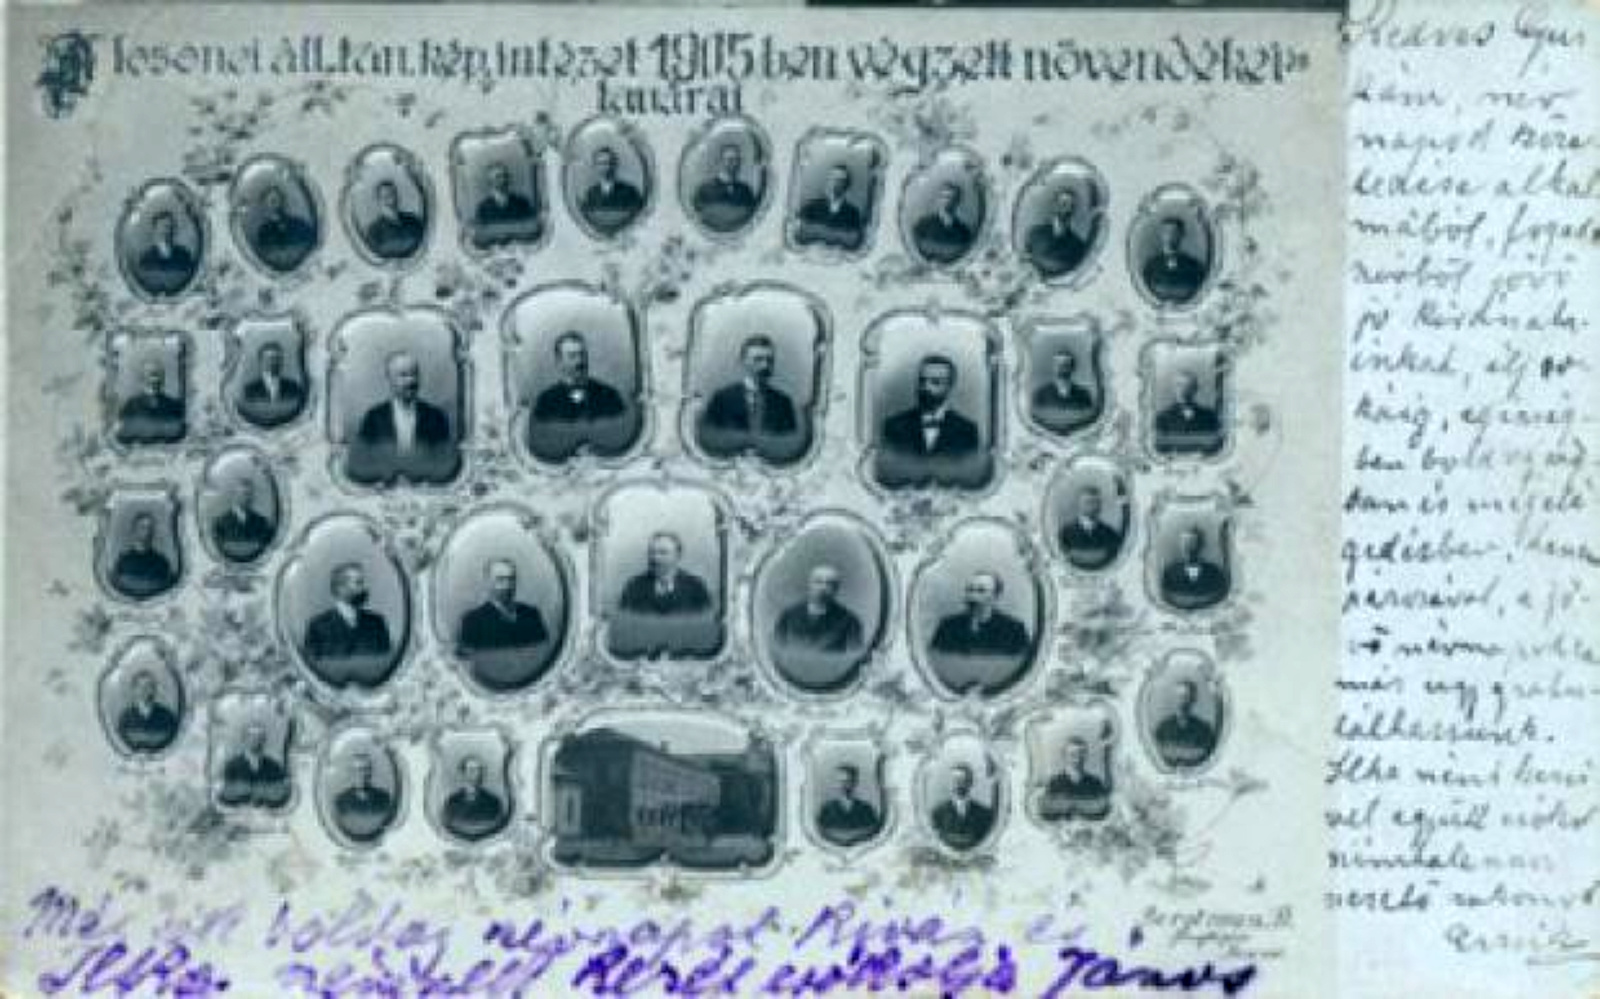 A losonci állami tantóképző intézet 1905-ben végzet növendékei é